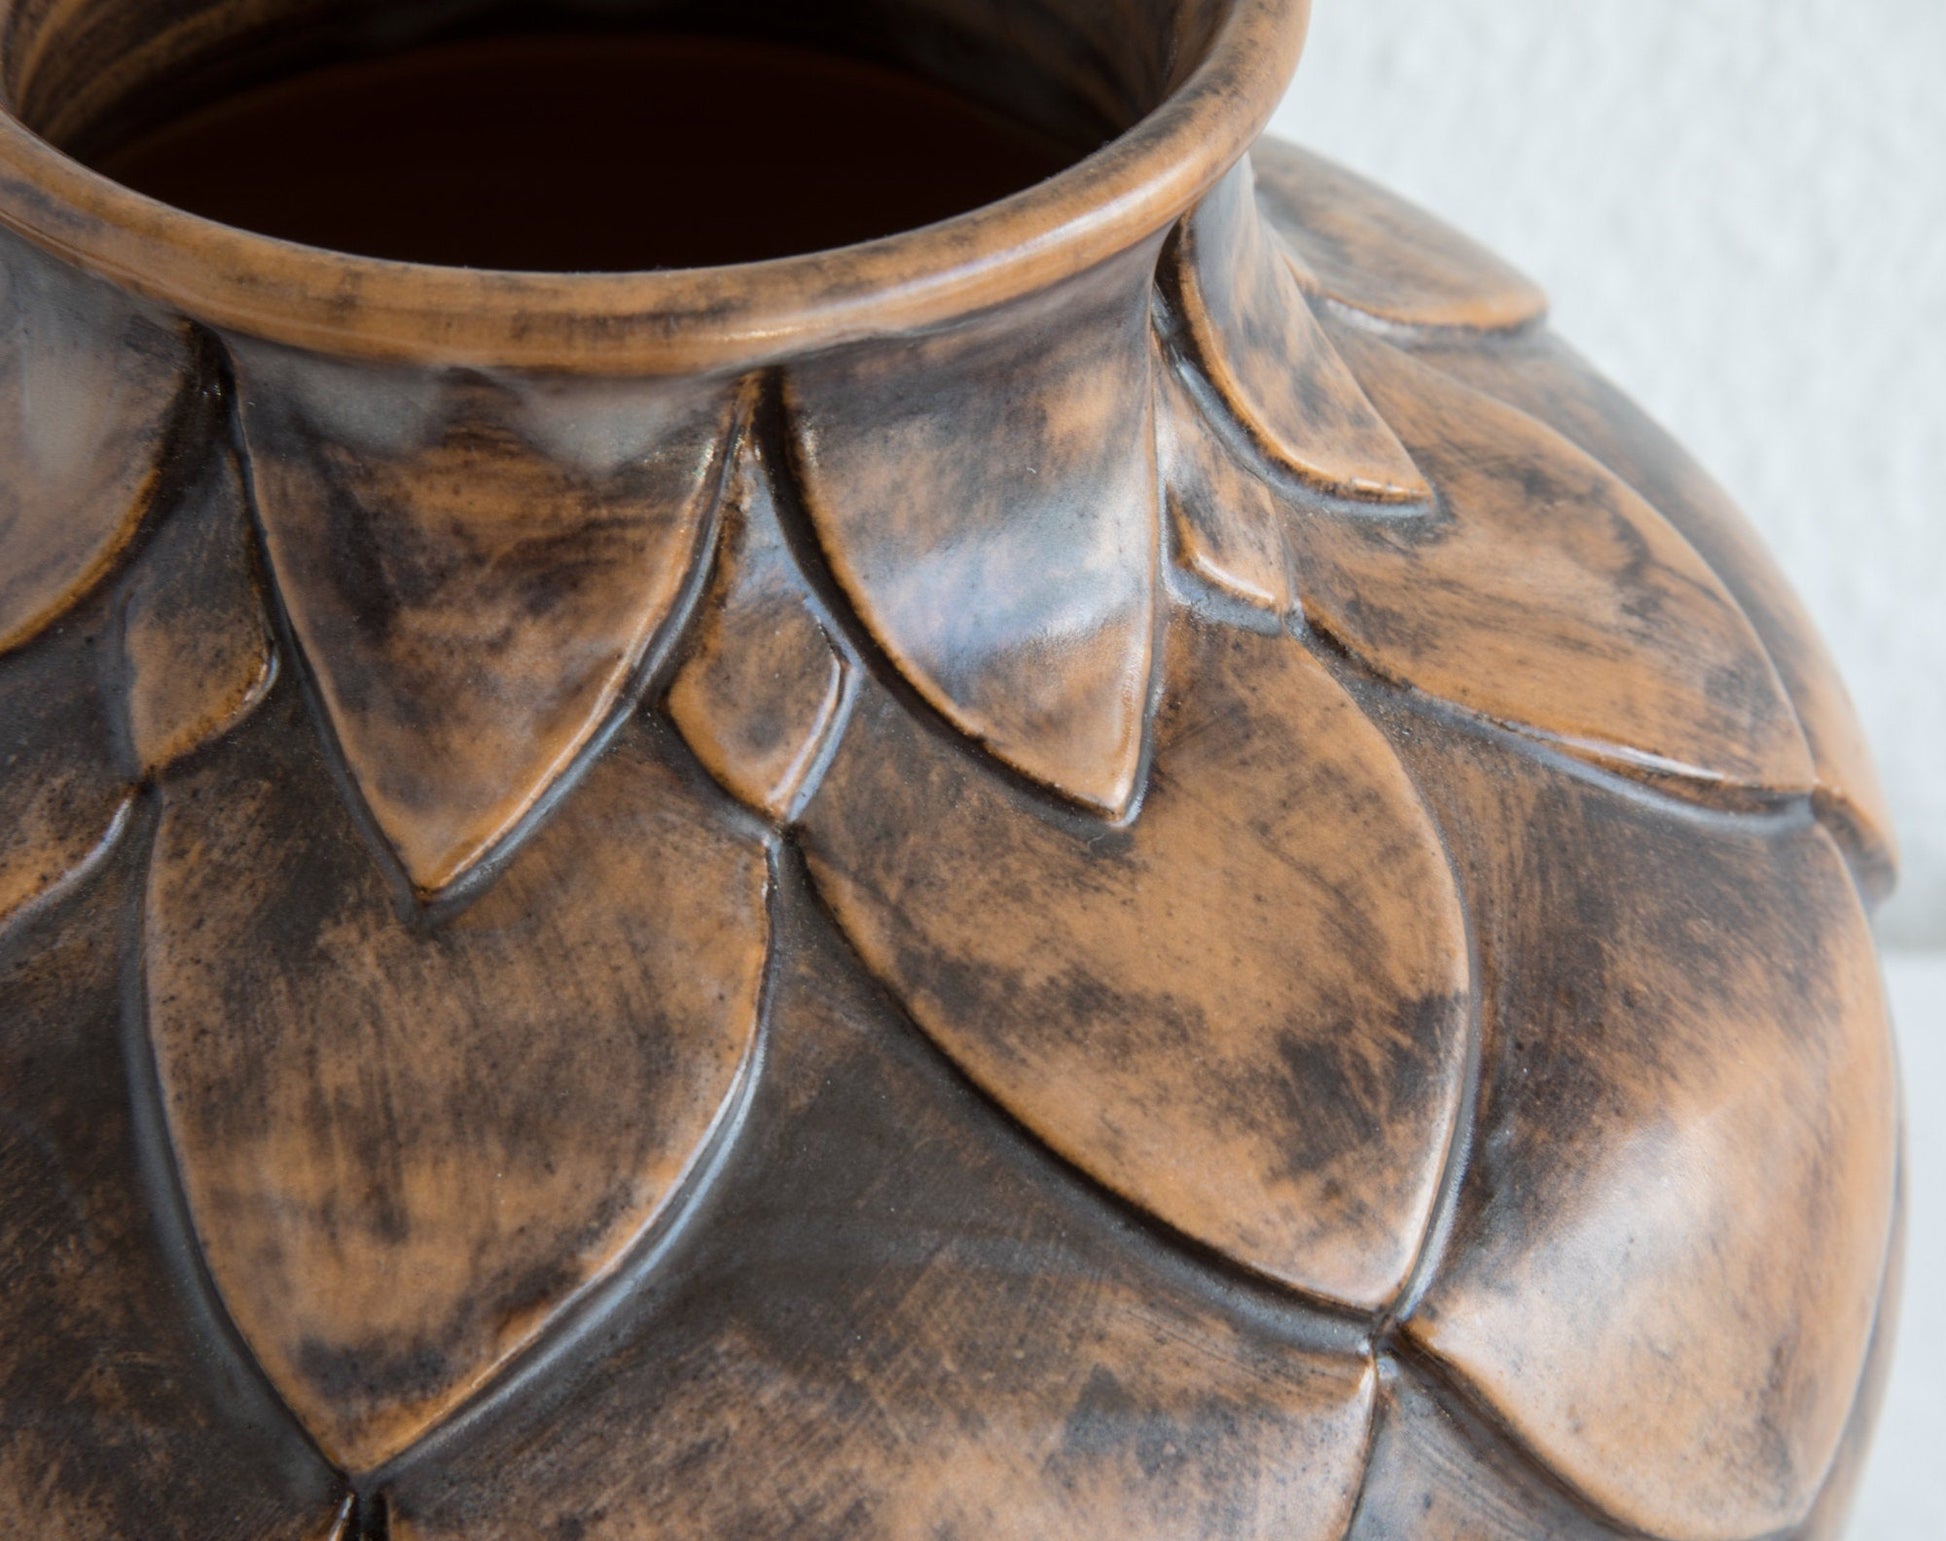 OVE RASMUSSEN Large Unique Brown Glazed Ceramic Vase Mollaris.com 